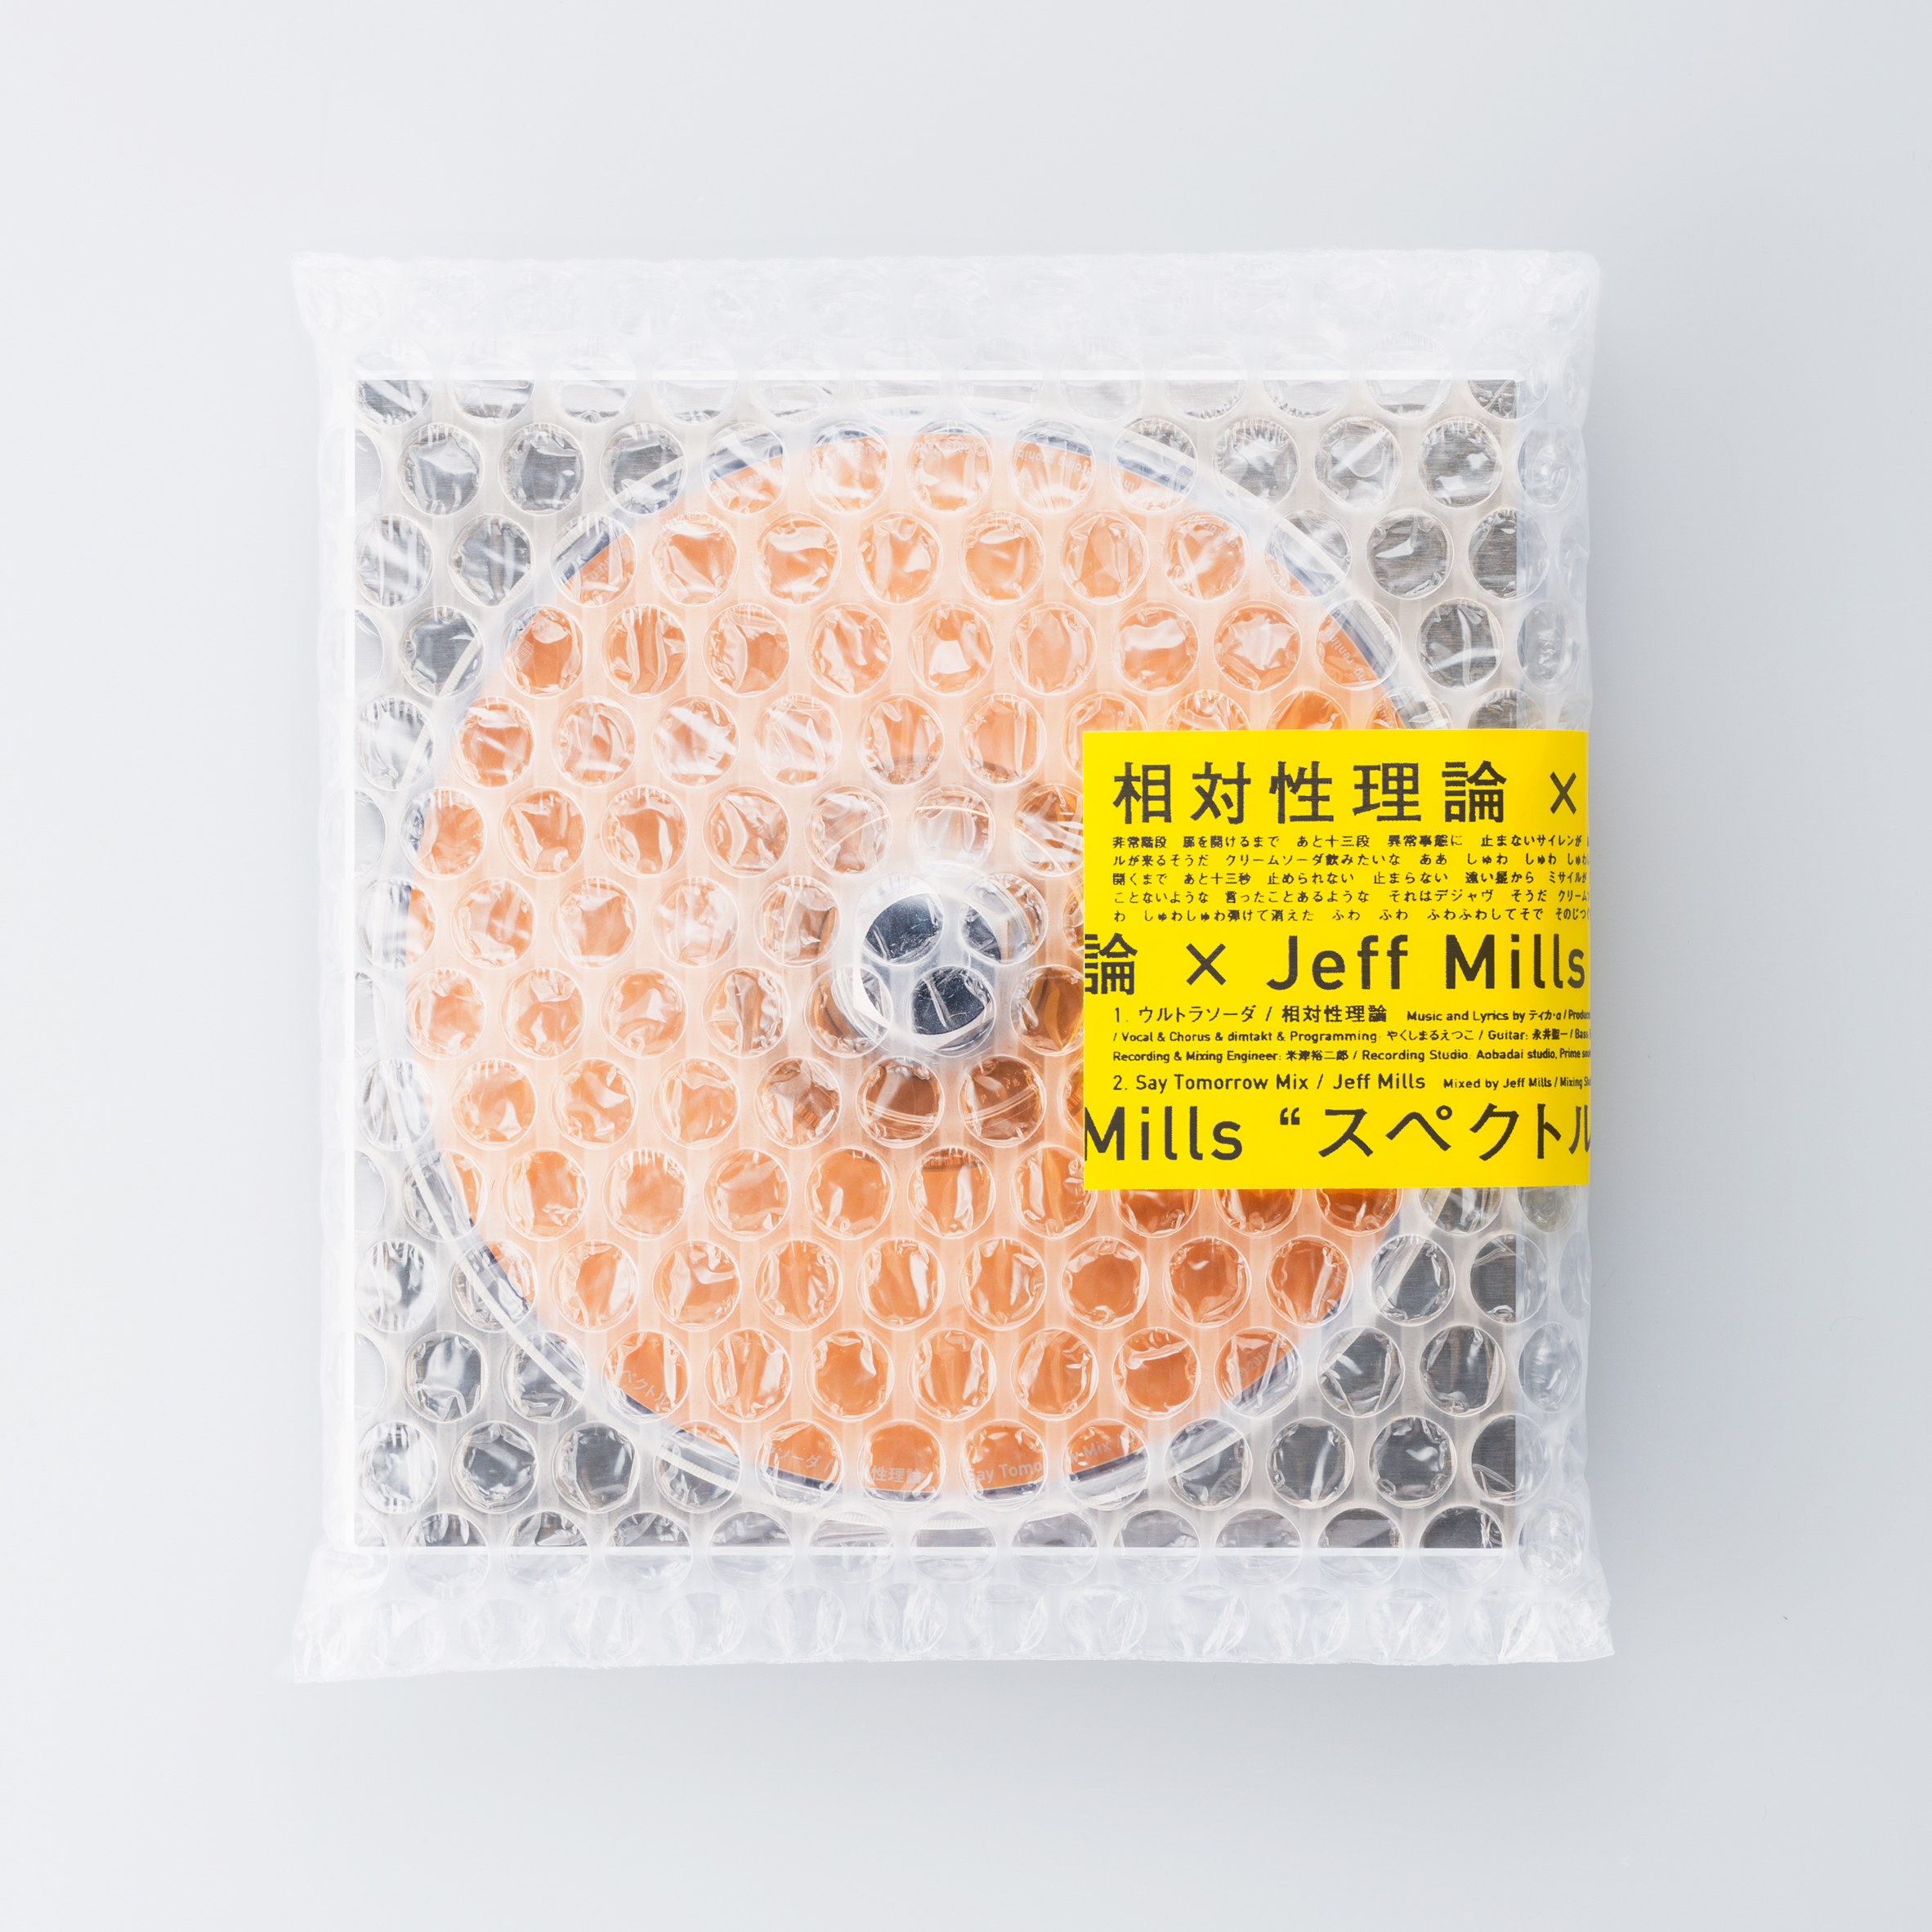 spread-metal-cd-case_minimalist-packaging-roundup_dezeen-2364-sq